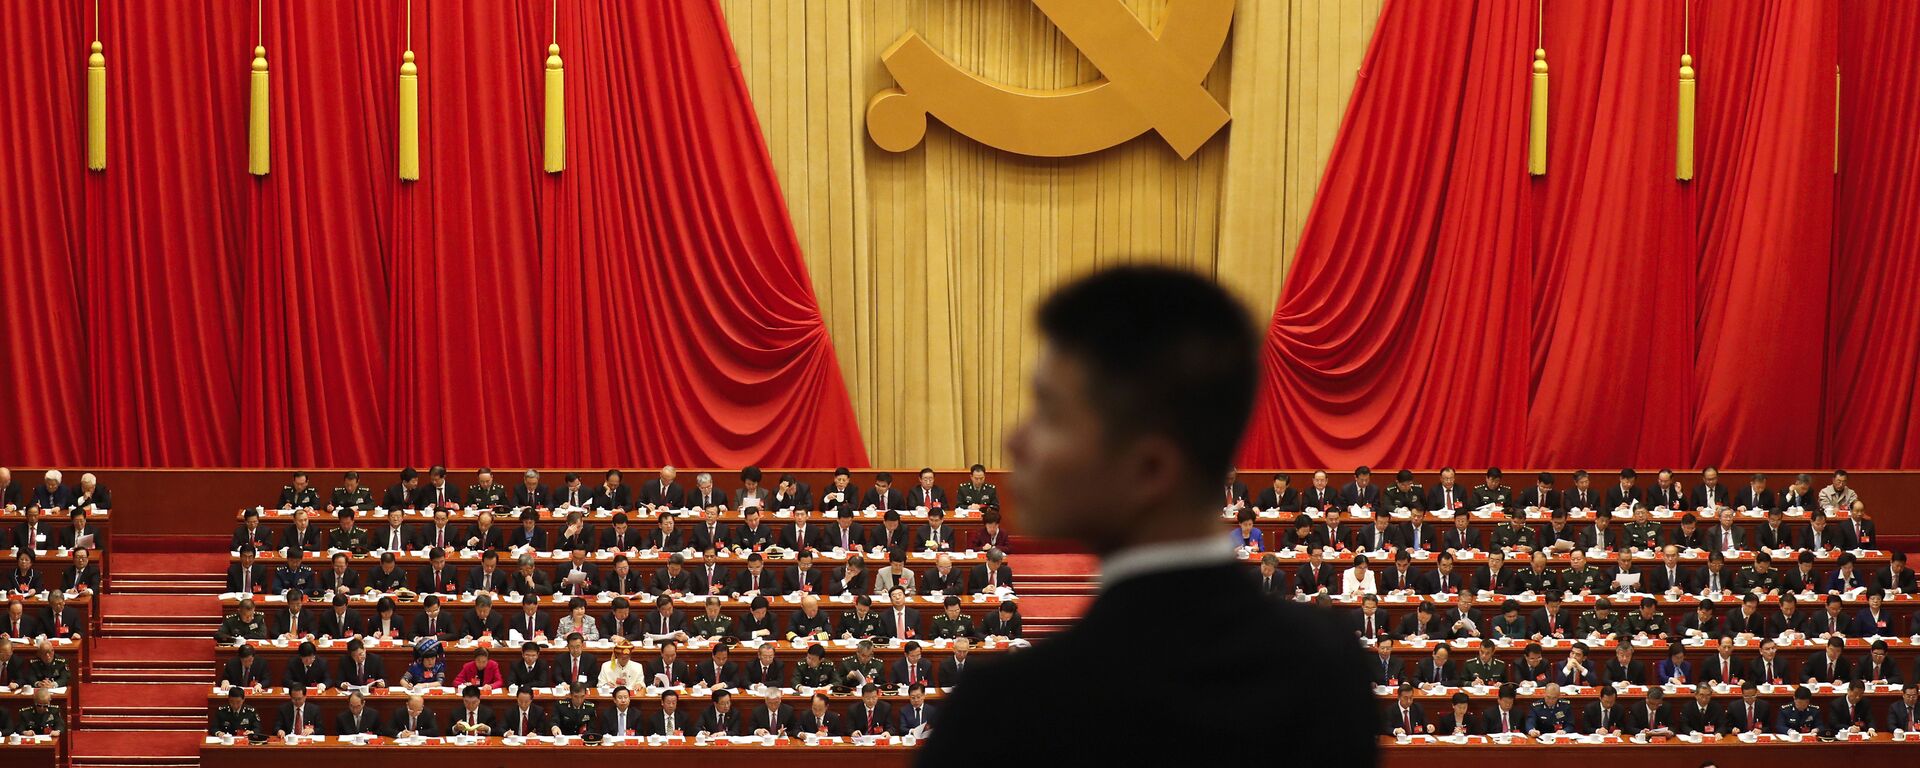 Vojnik stoji tokom govora kineskog predsednika Si Đinpinga na ceremoniji otvaranja 19. kongresa Komunističke partije u Pekingu - Sputnik Srbija, 1920, 21.02.2023